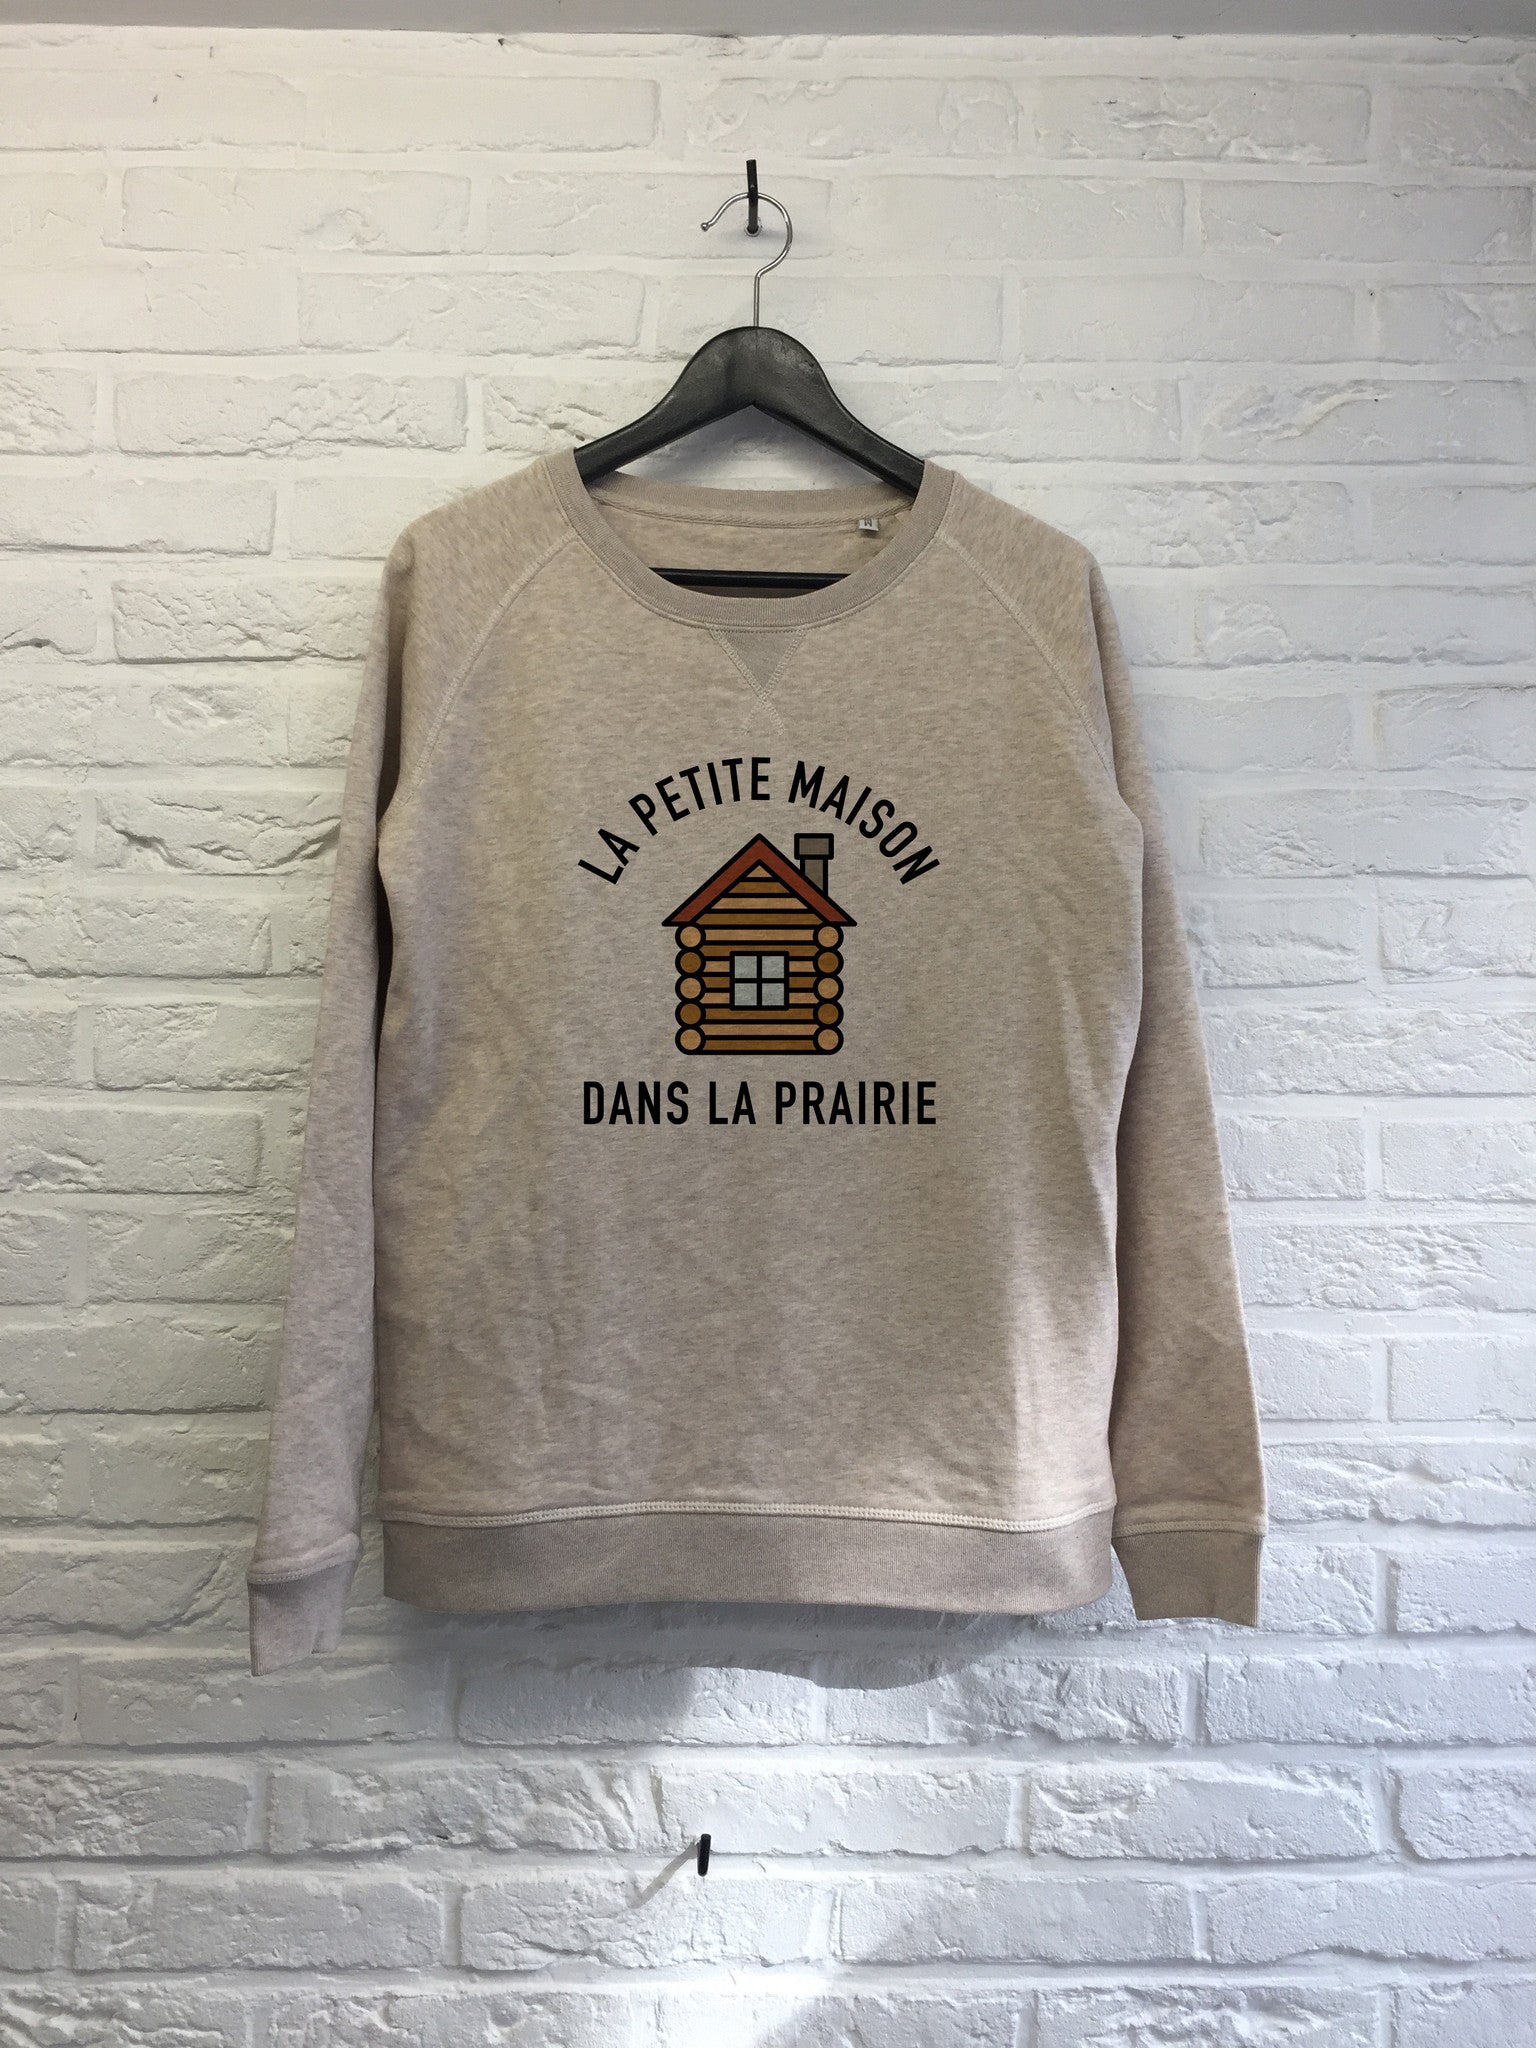 La petite maison dans la prairie - Sweat - Femme-Sweat shirts-Atelier Amelot